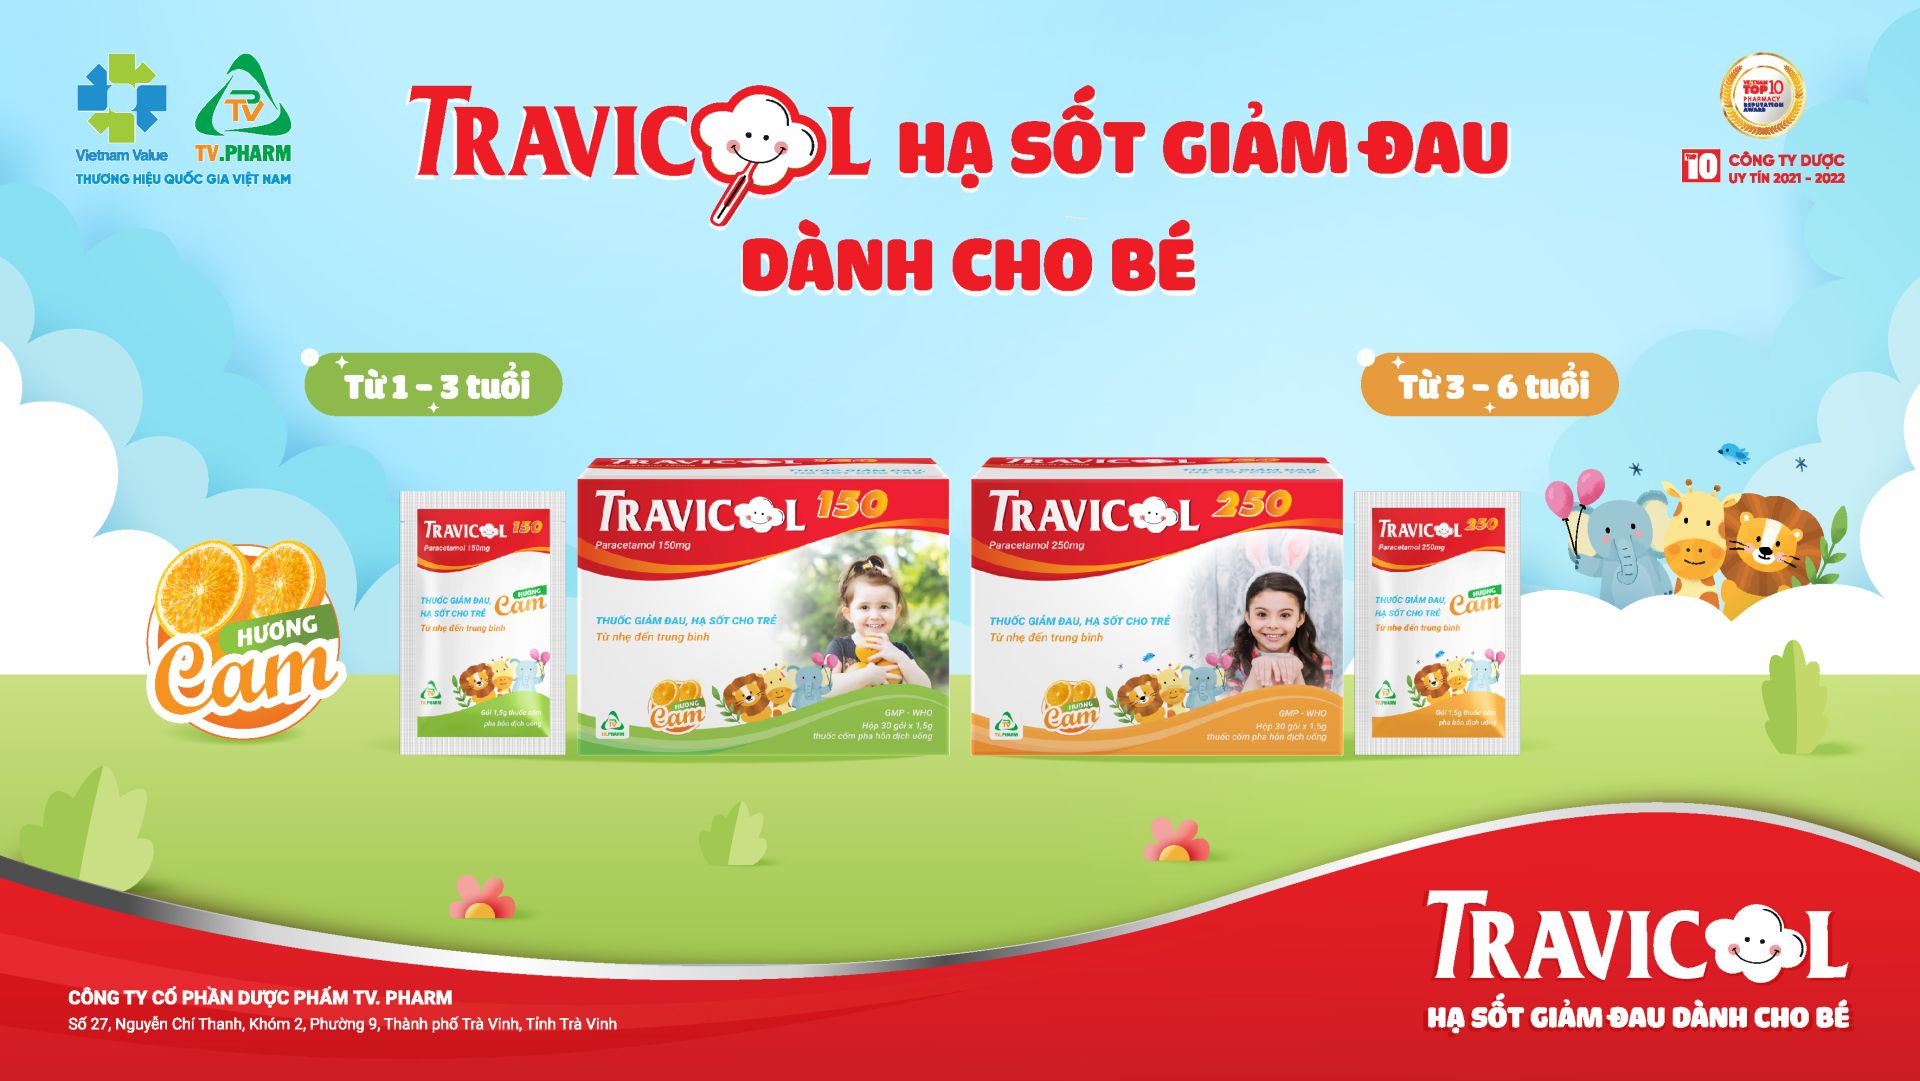 Thuốc hạ sốt giảm đau dành cho bé Travicol 150 & 250 được sản xuất bởi Công ty Cổ phần Dược phẩm TV.PHARM – Top 10 Công ty Dược uy tín.